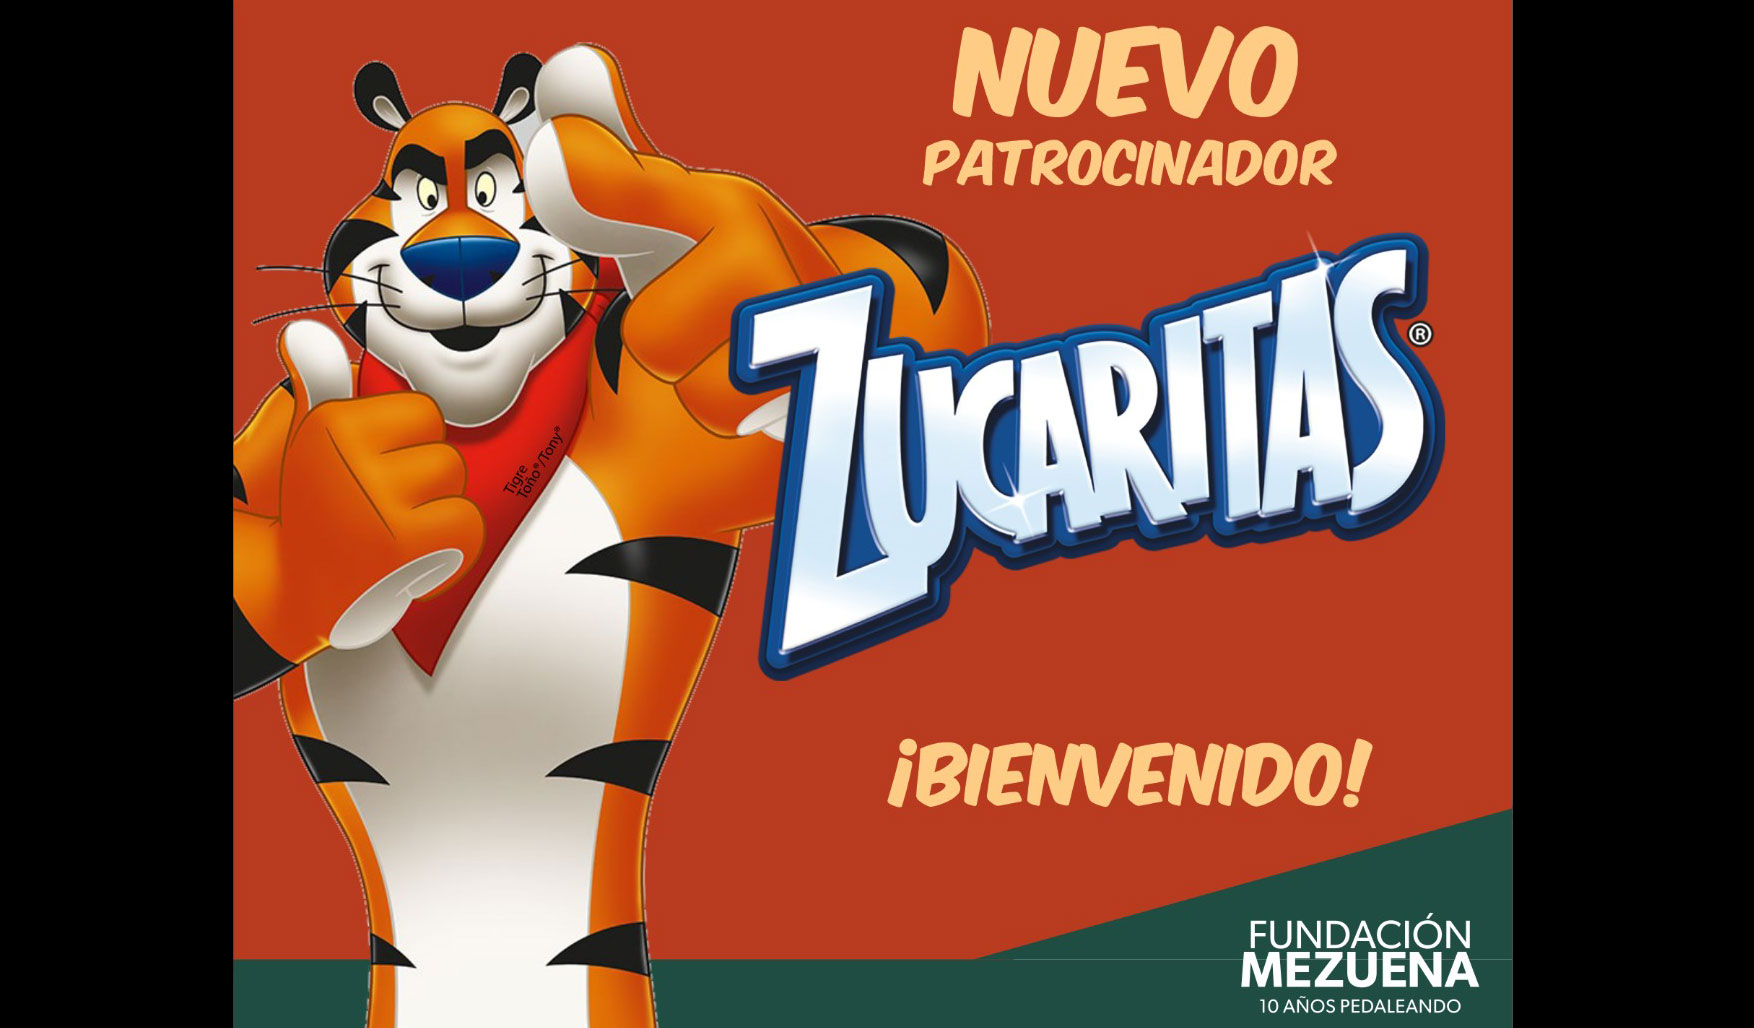 NUEVO PATROCINADOR: Bienvenido Zucaritas 